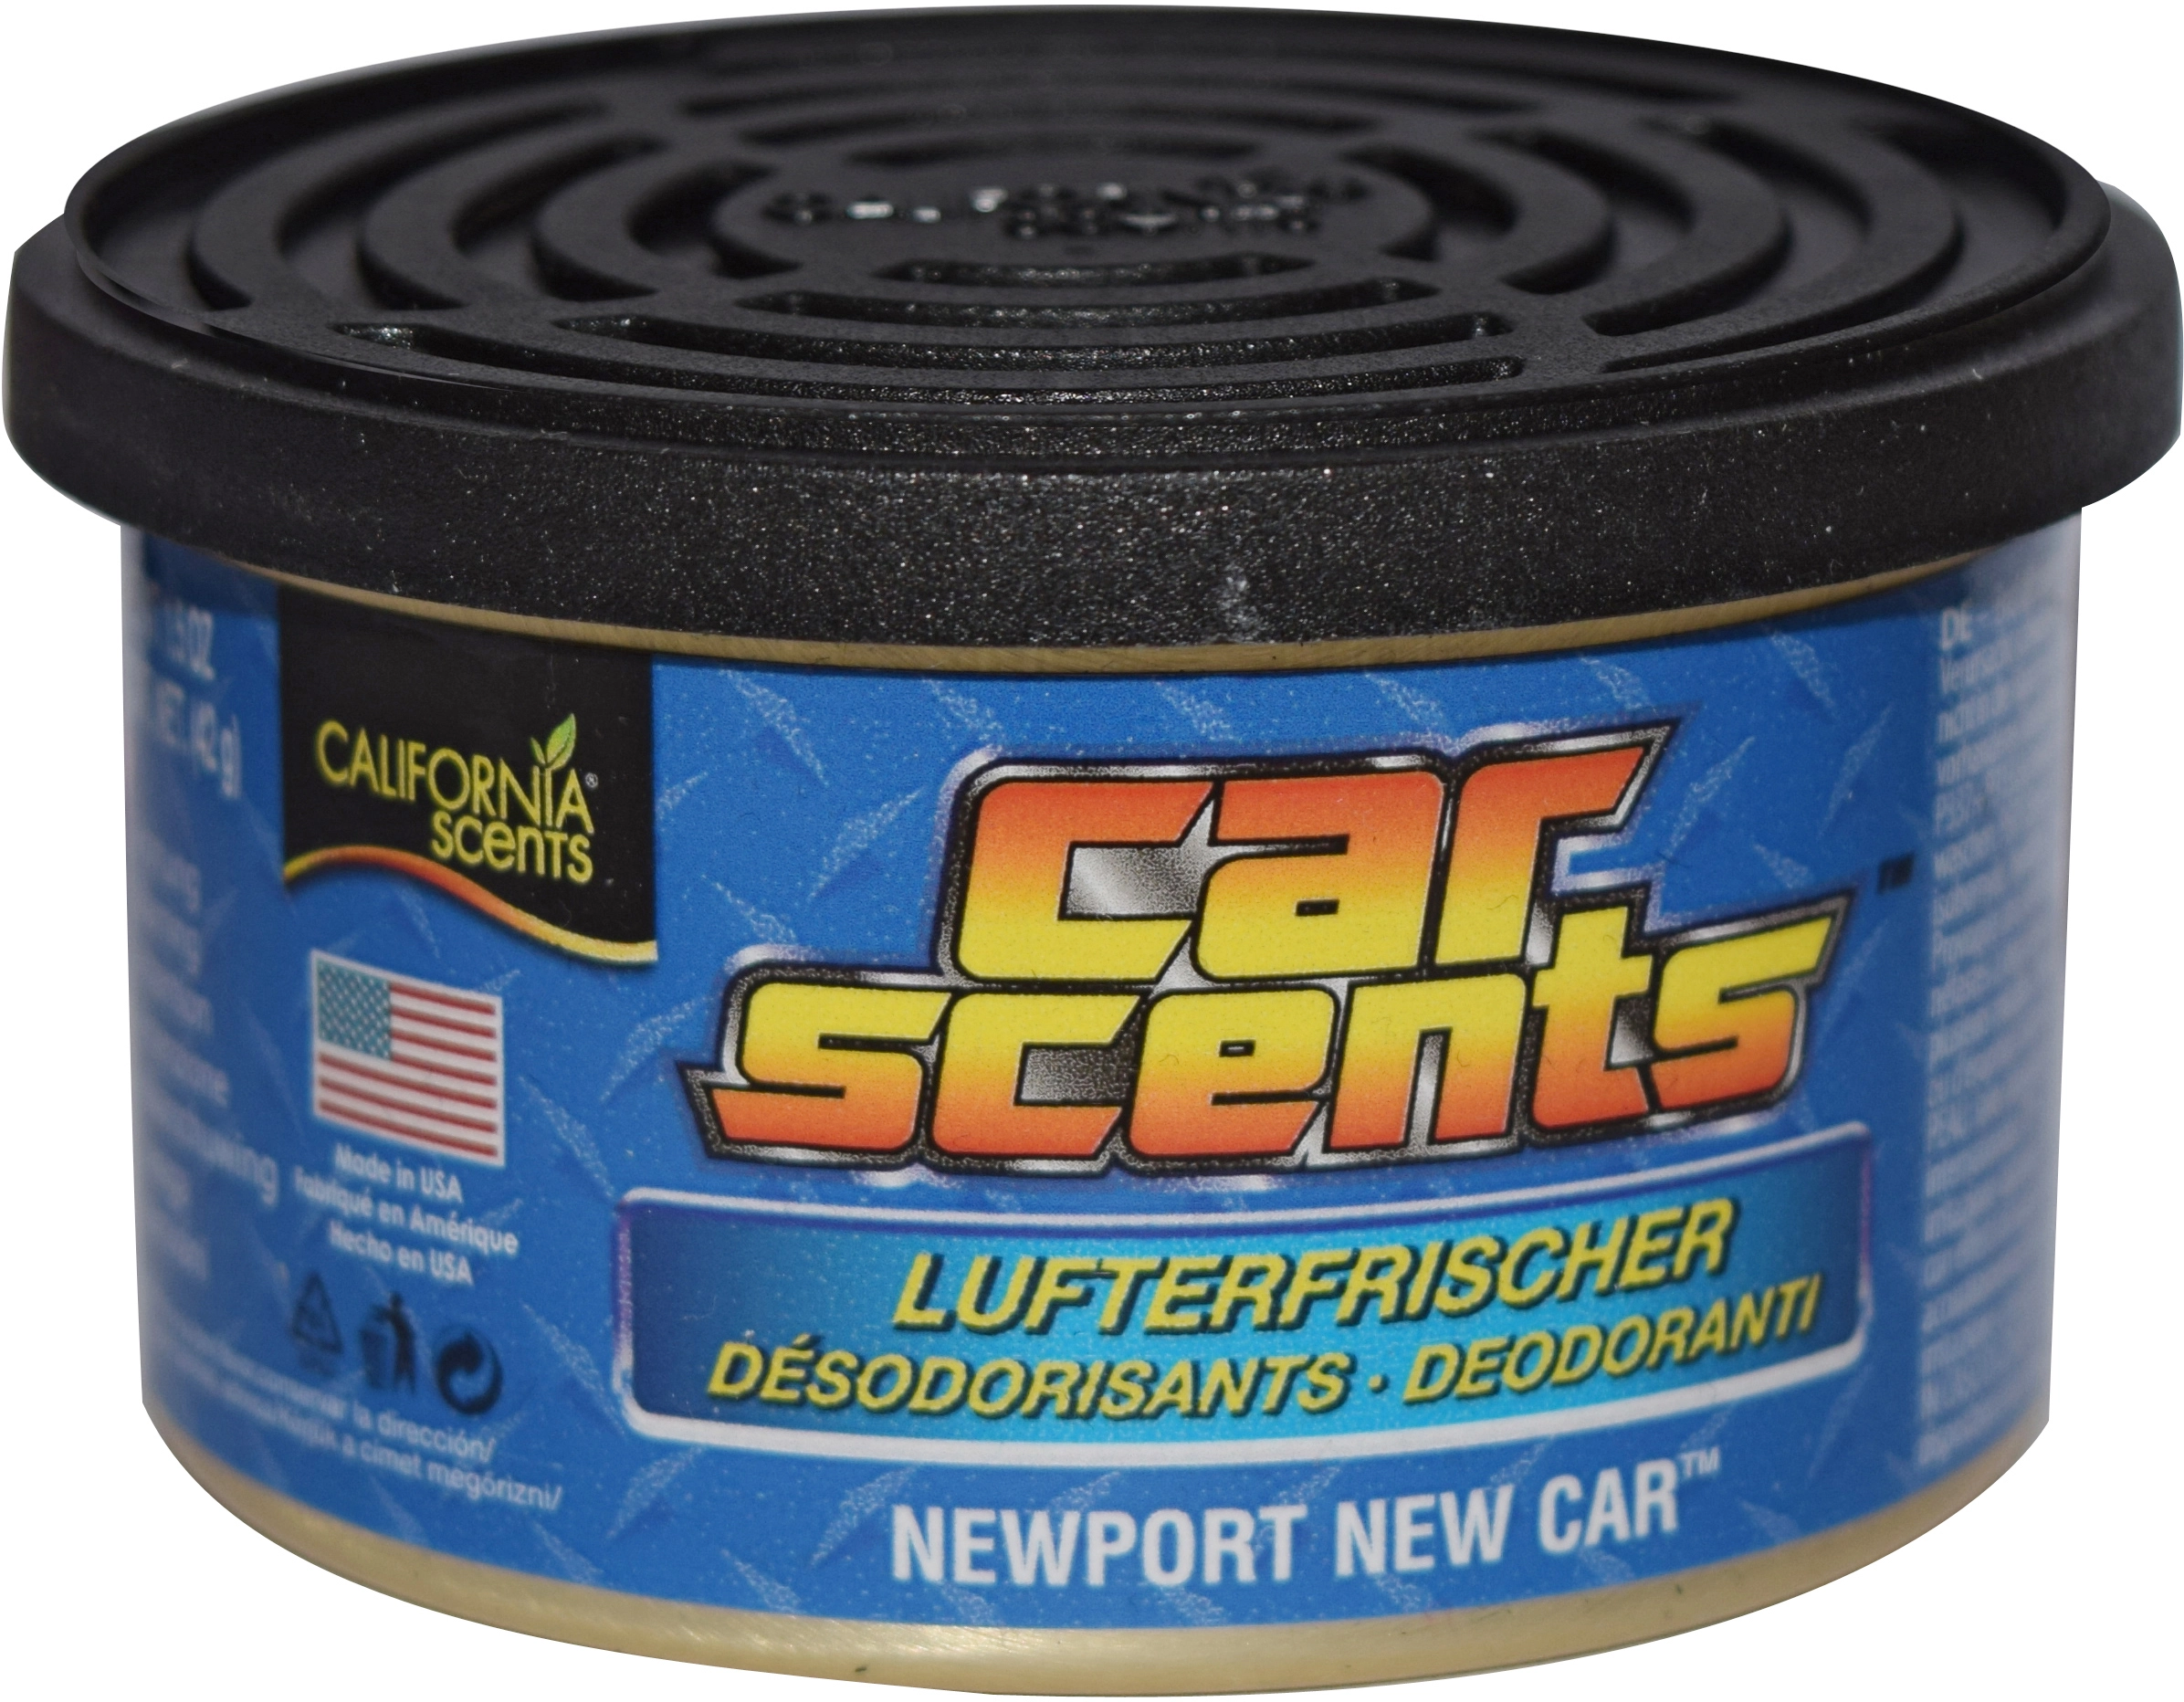 California Scents Newport New Car Lufterfrischer in der Dose kaufen bei OBI